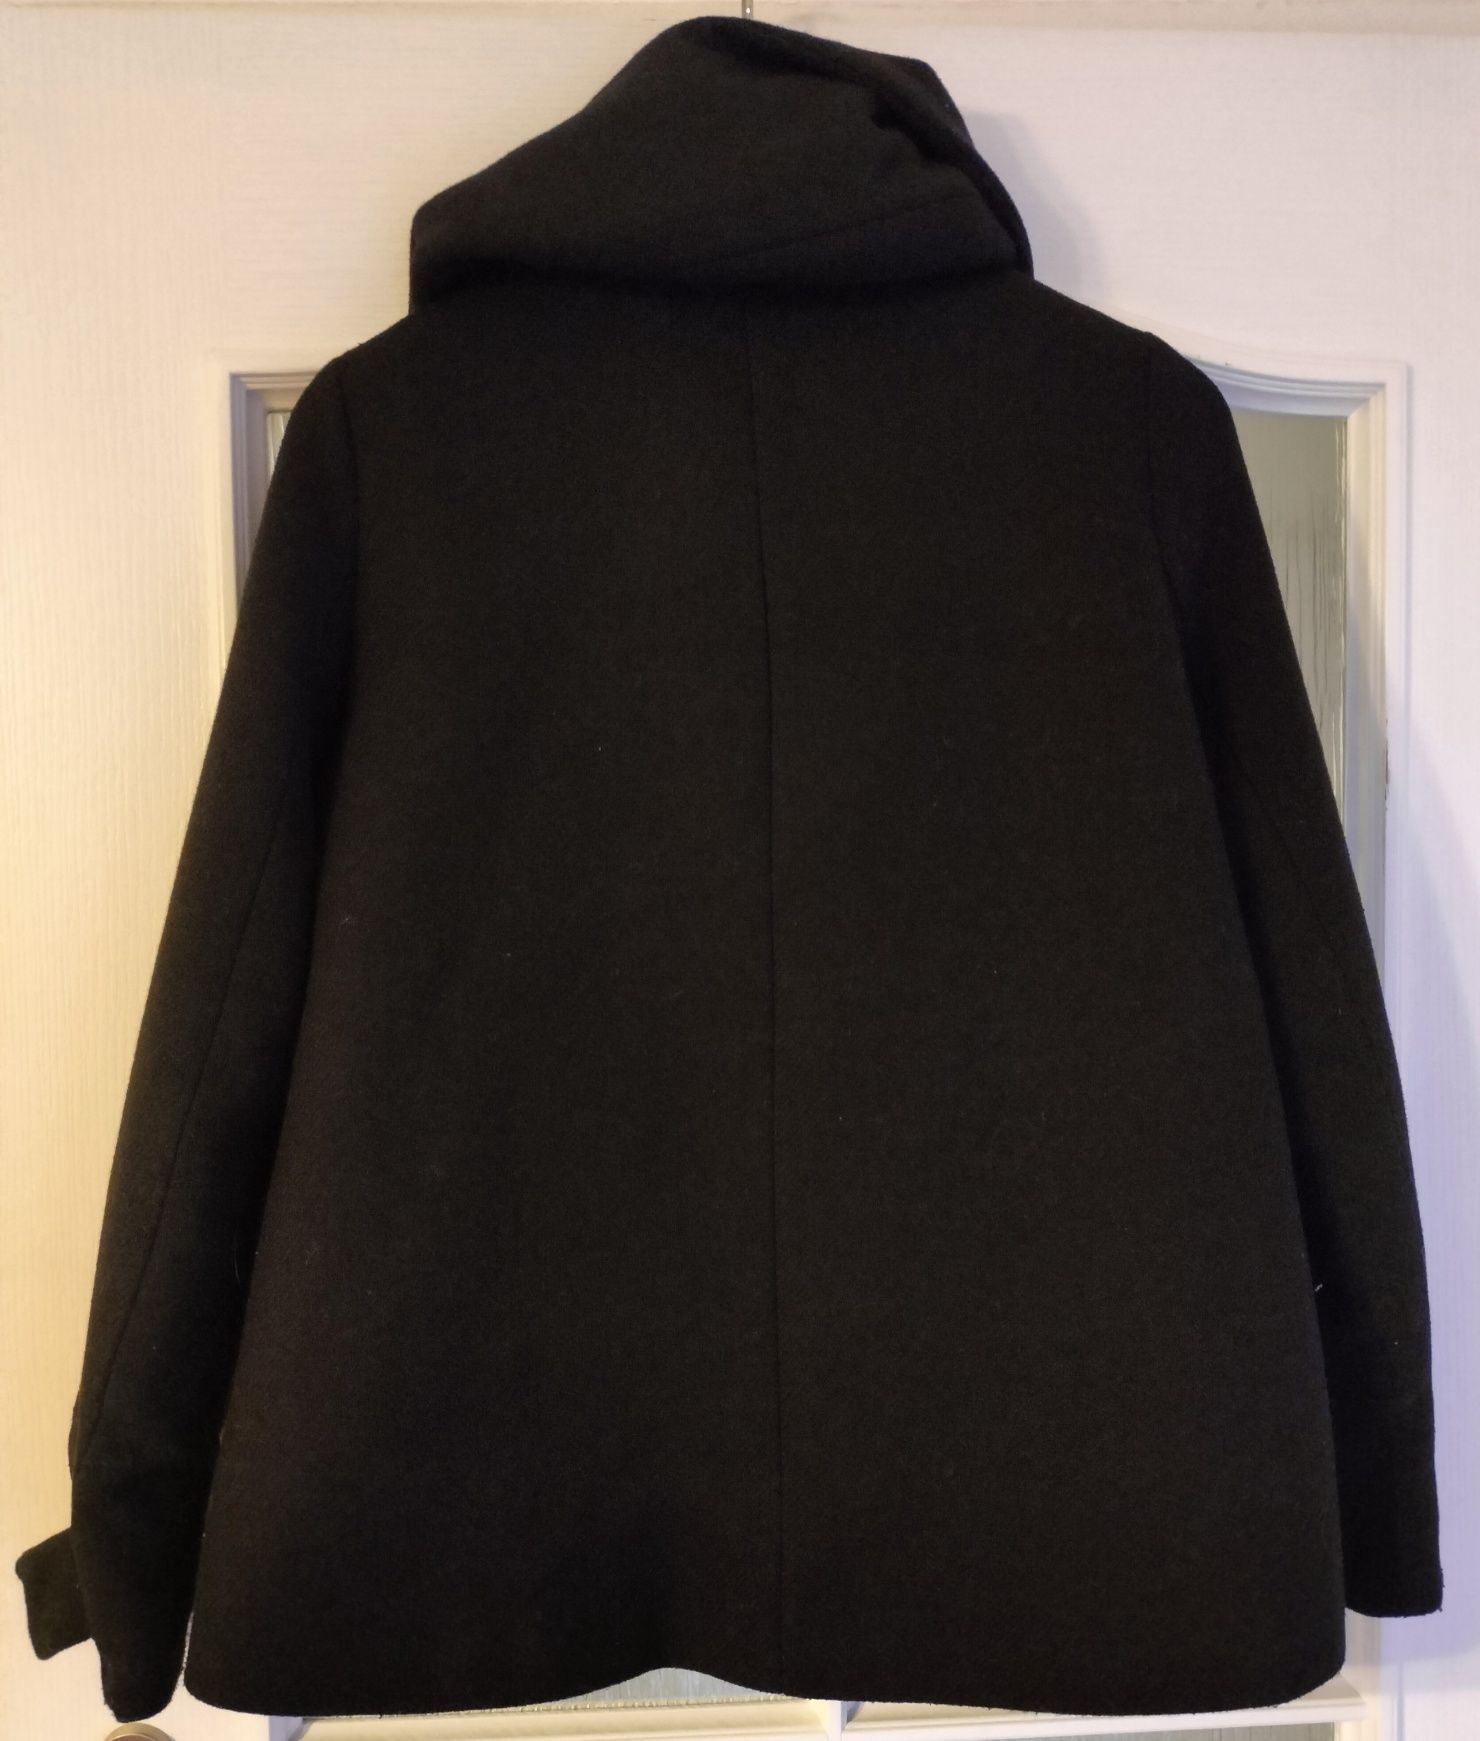 Czarny, krótki płaszcz z kapturem - ZARA - rozmiar M